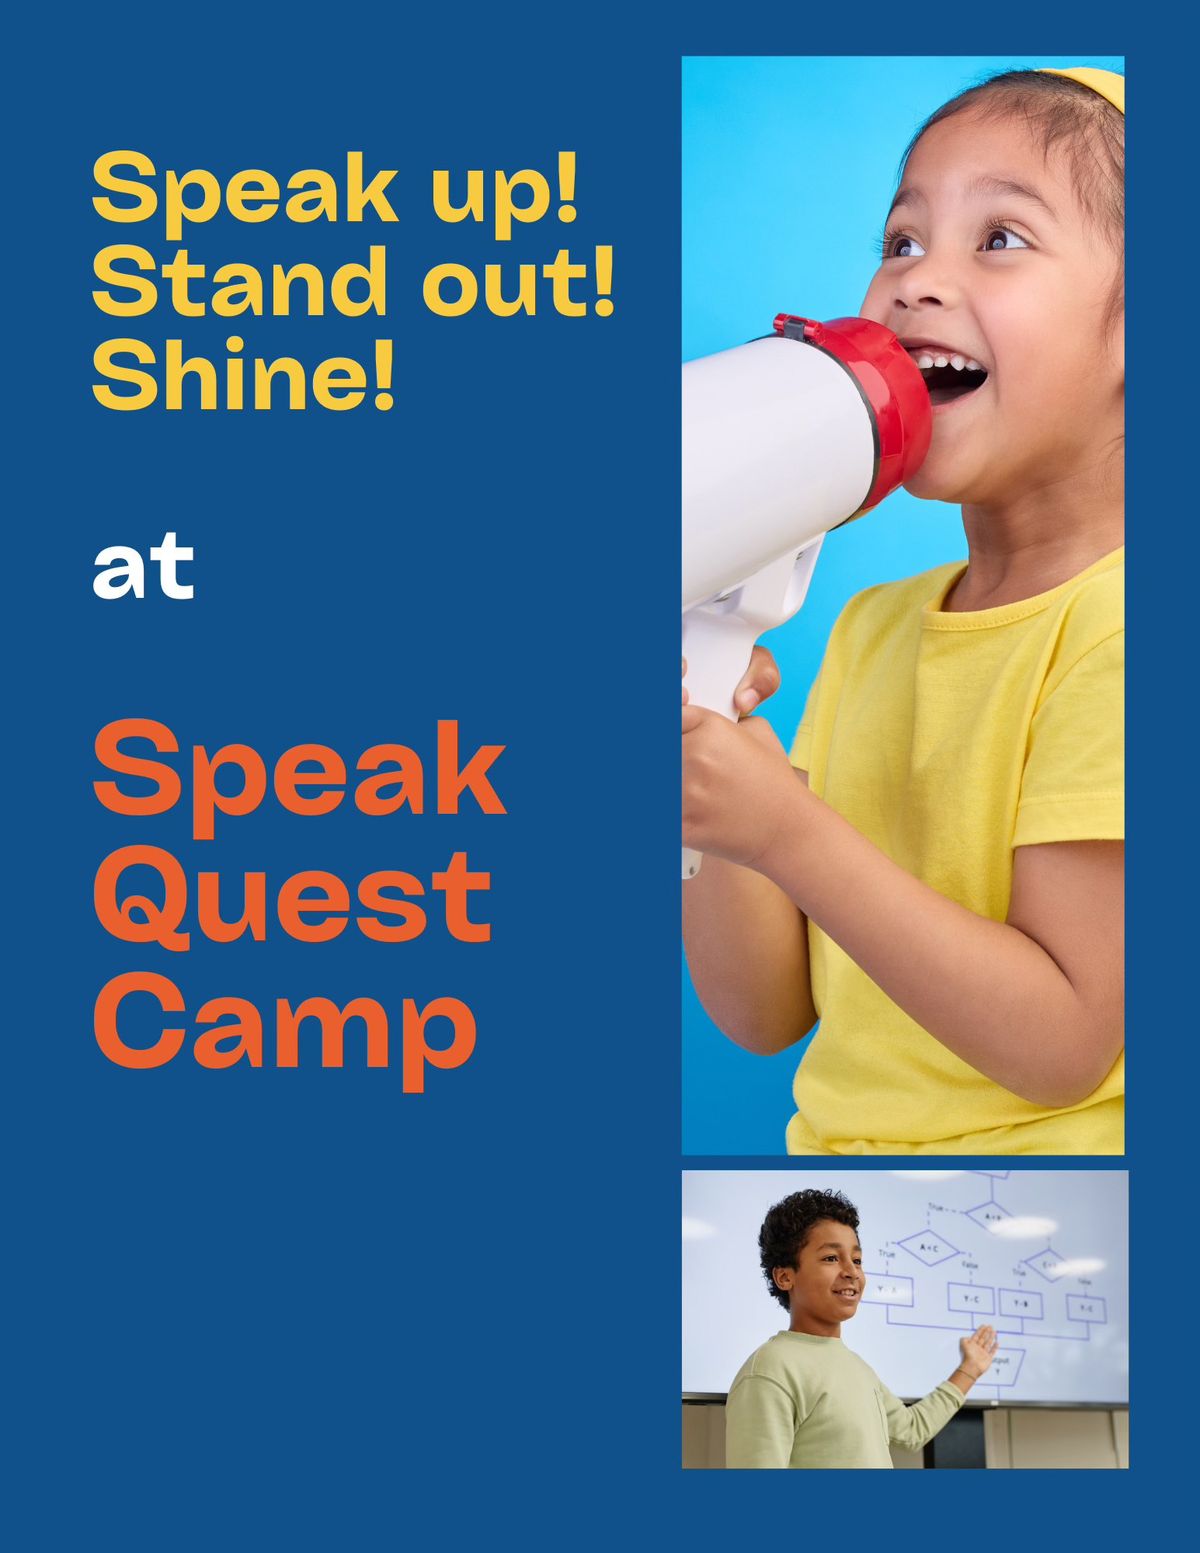 Speak Quest (Public Speaking Camp)